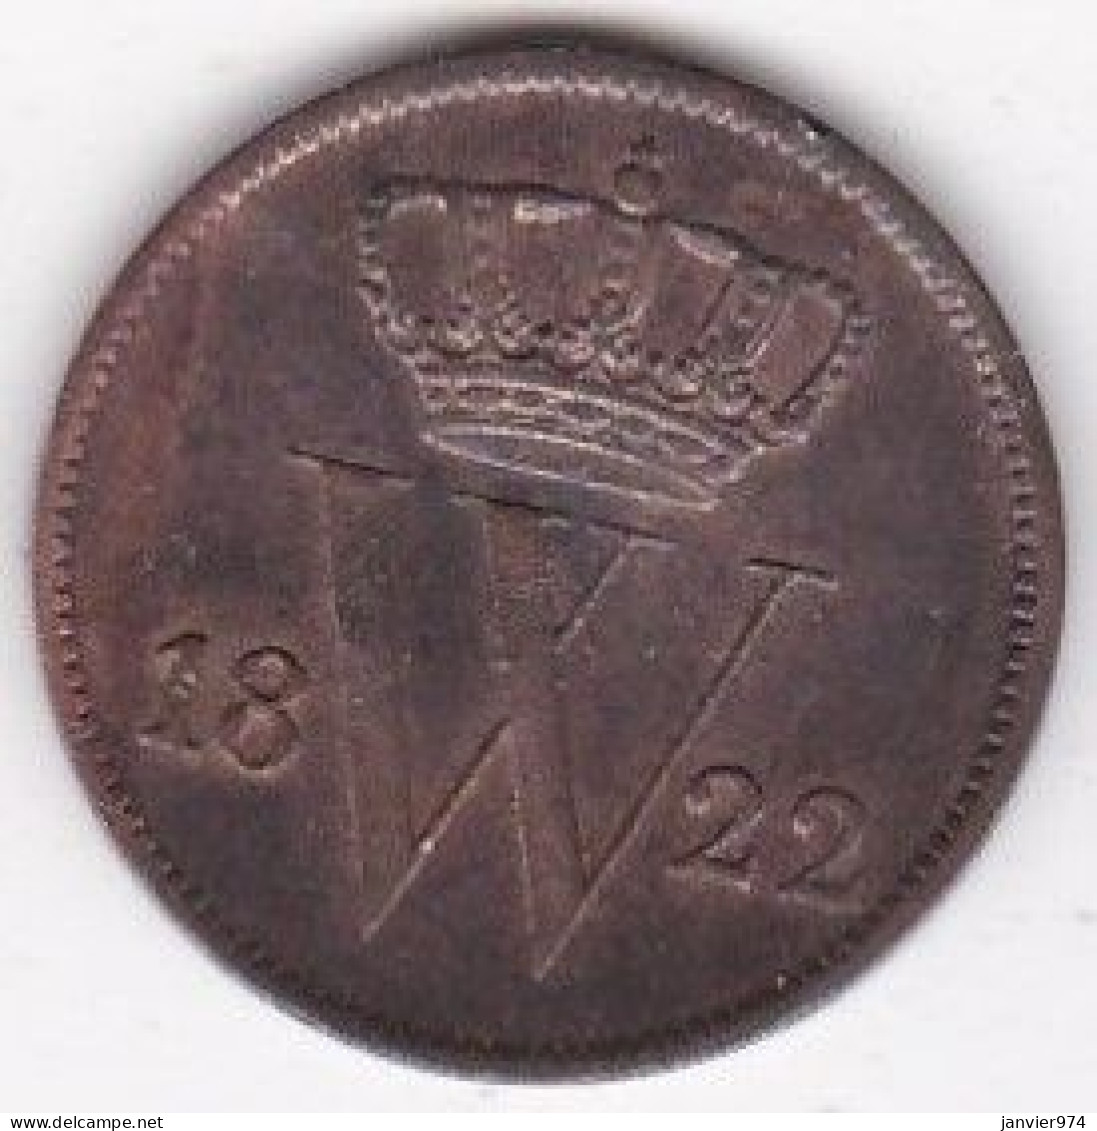 Pays Bas 1 Cent 1822 Willem I En Cuivre, KM# 47 - 1815-1840 : Willem I